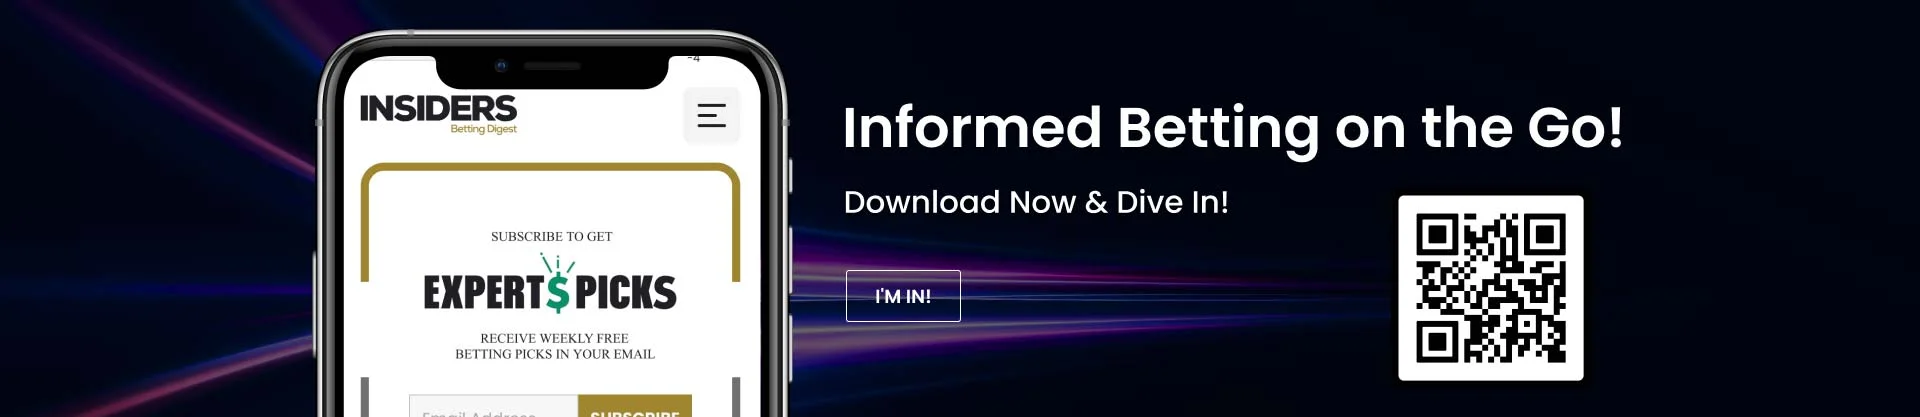 Insiders Mobile App Banner